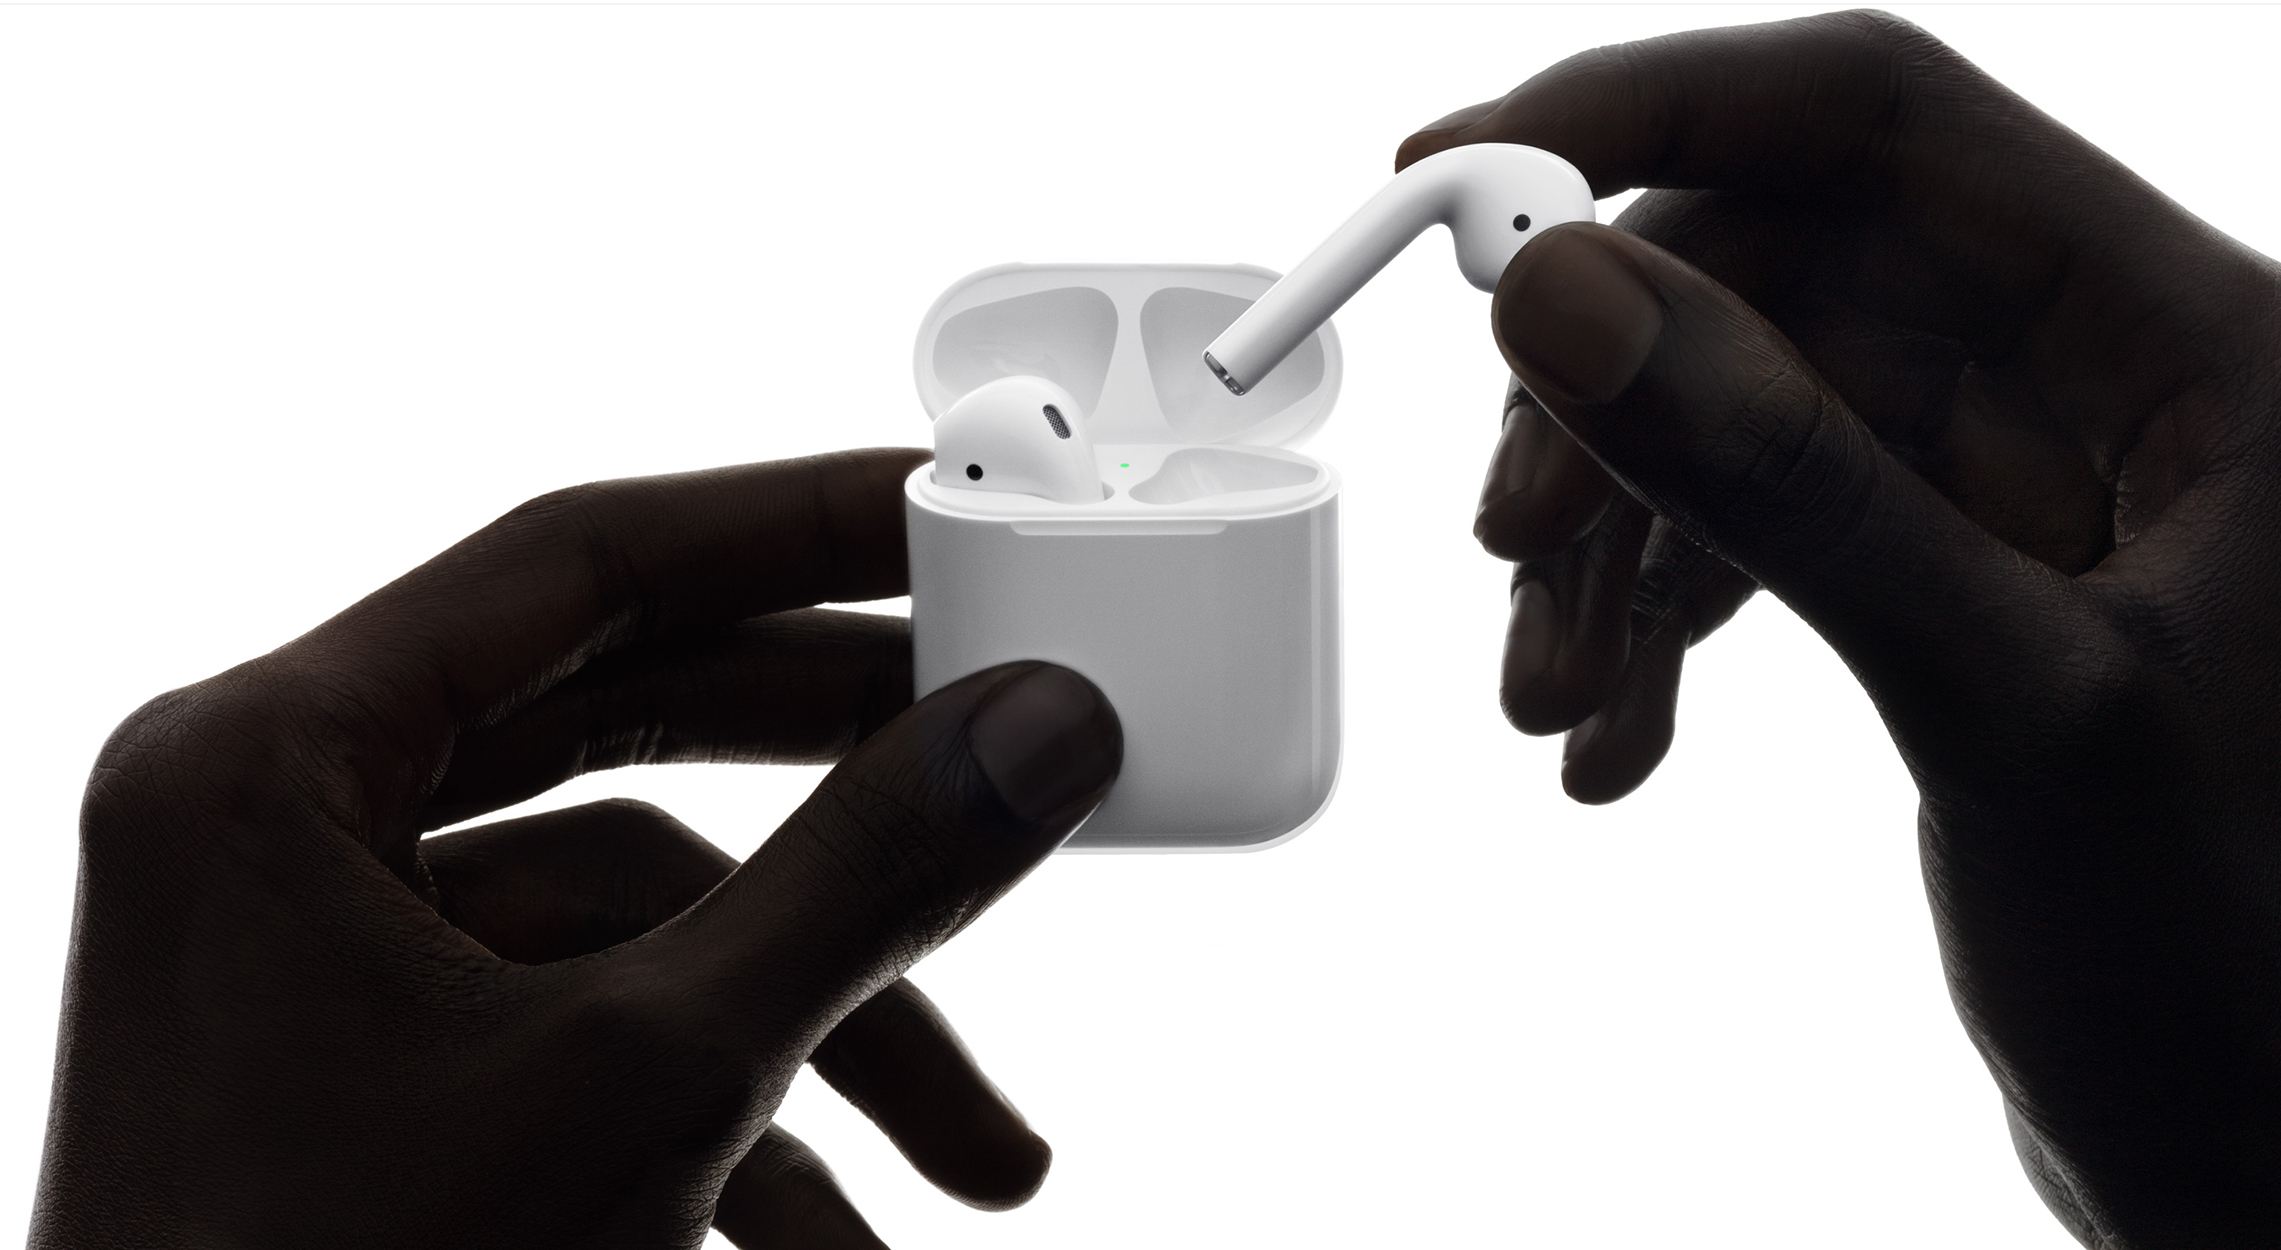 Uma foto de fones de ouvido sem fio AirPods sendo tirados de seu estojo